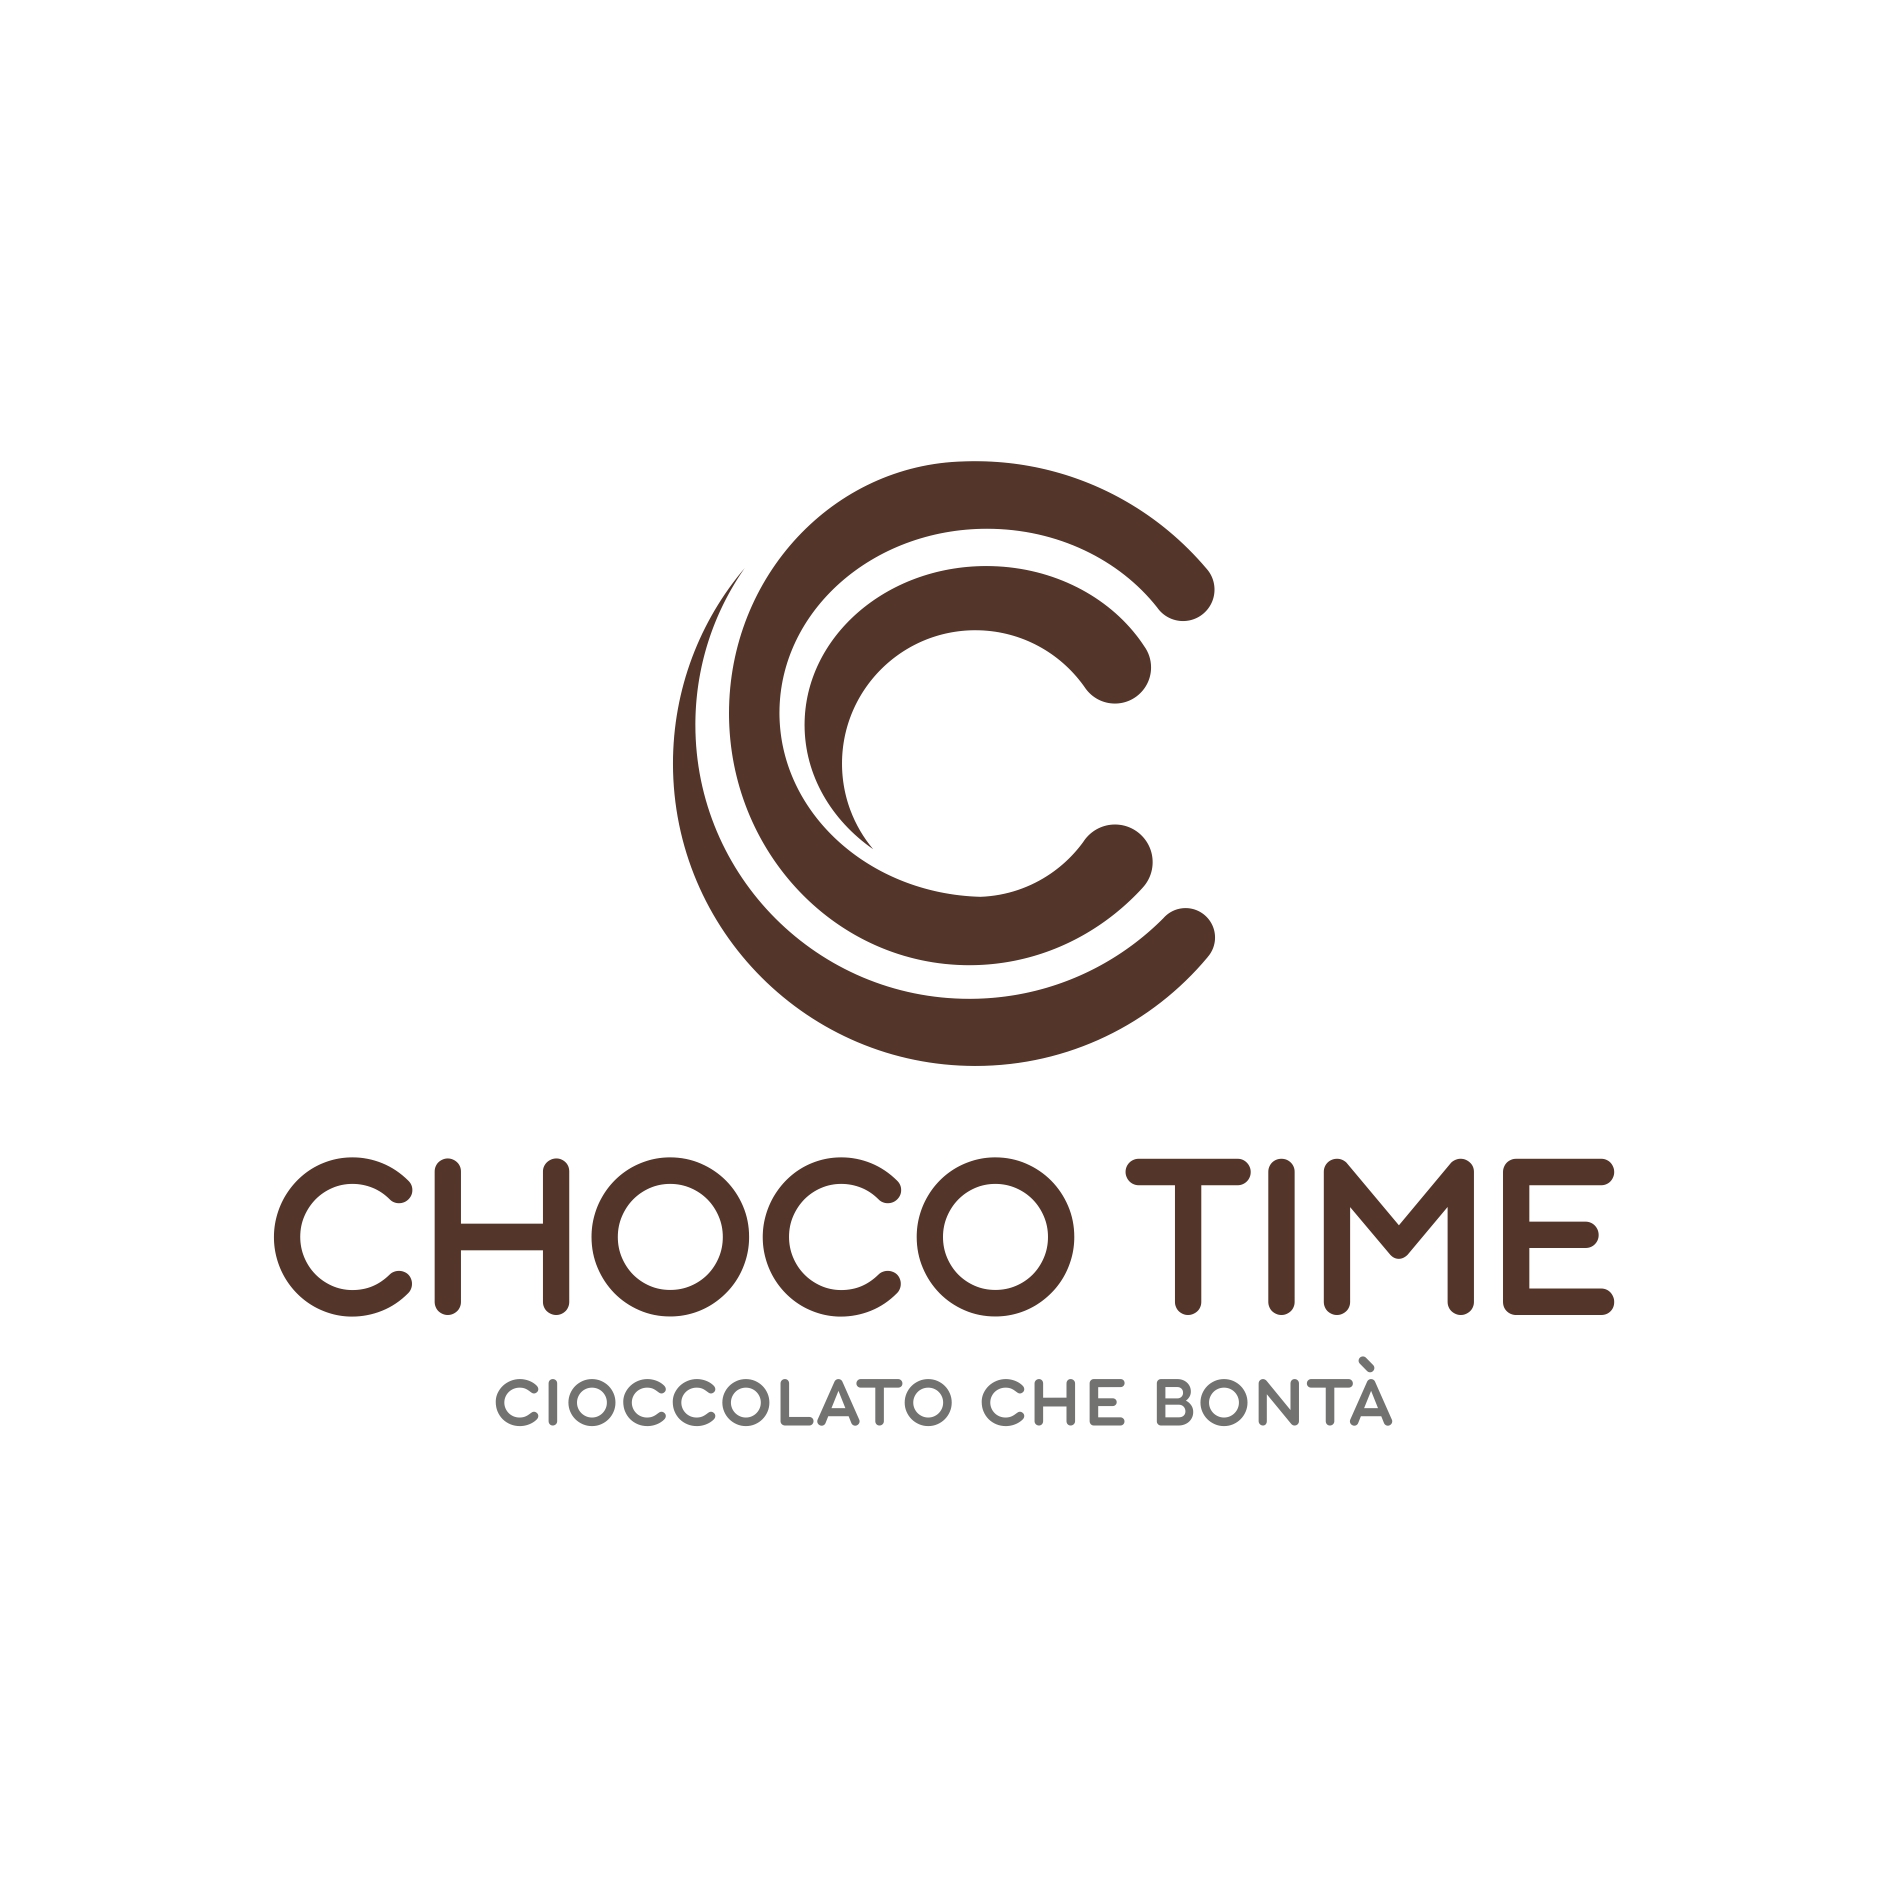 Choco Time - Cioccolato che bontà